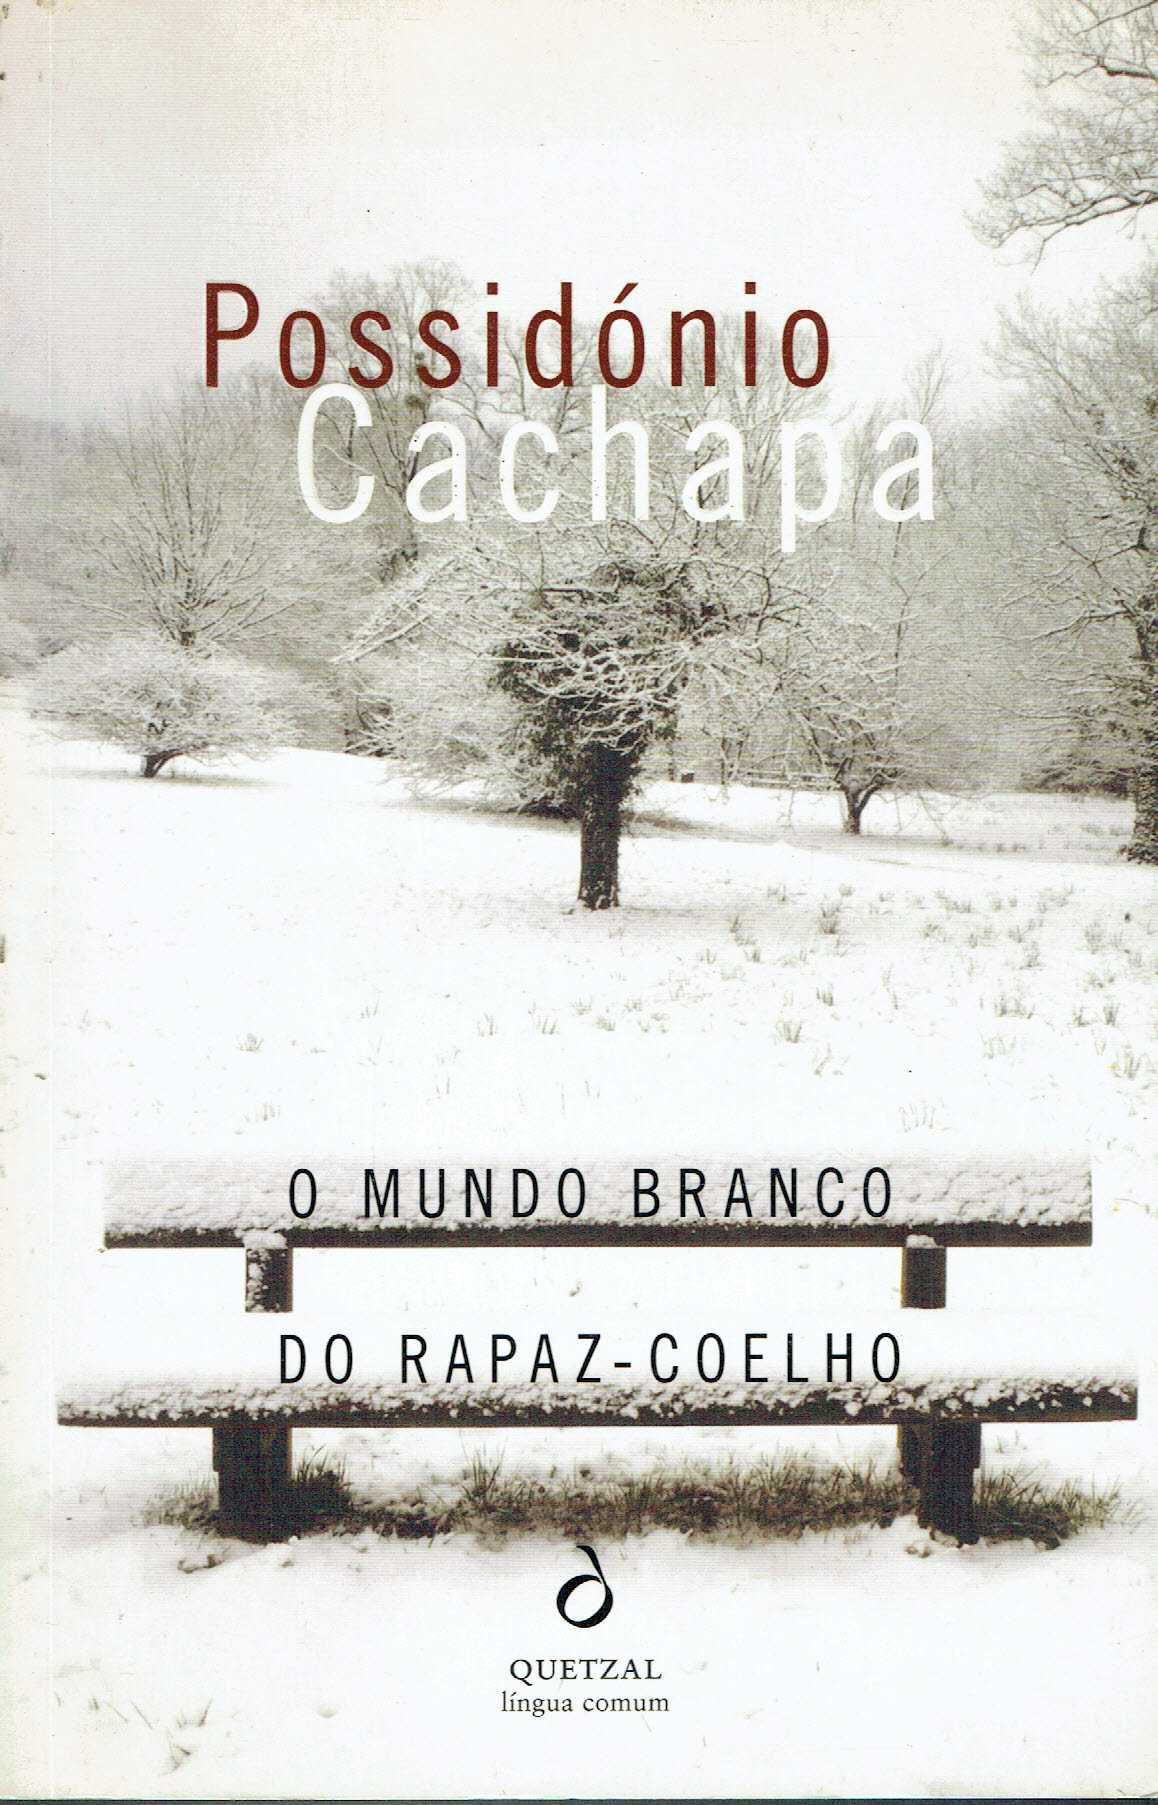 9486

O Mundo Branco do Rapaz Coelho
de Possidónio Cachapa